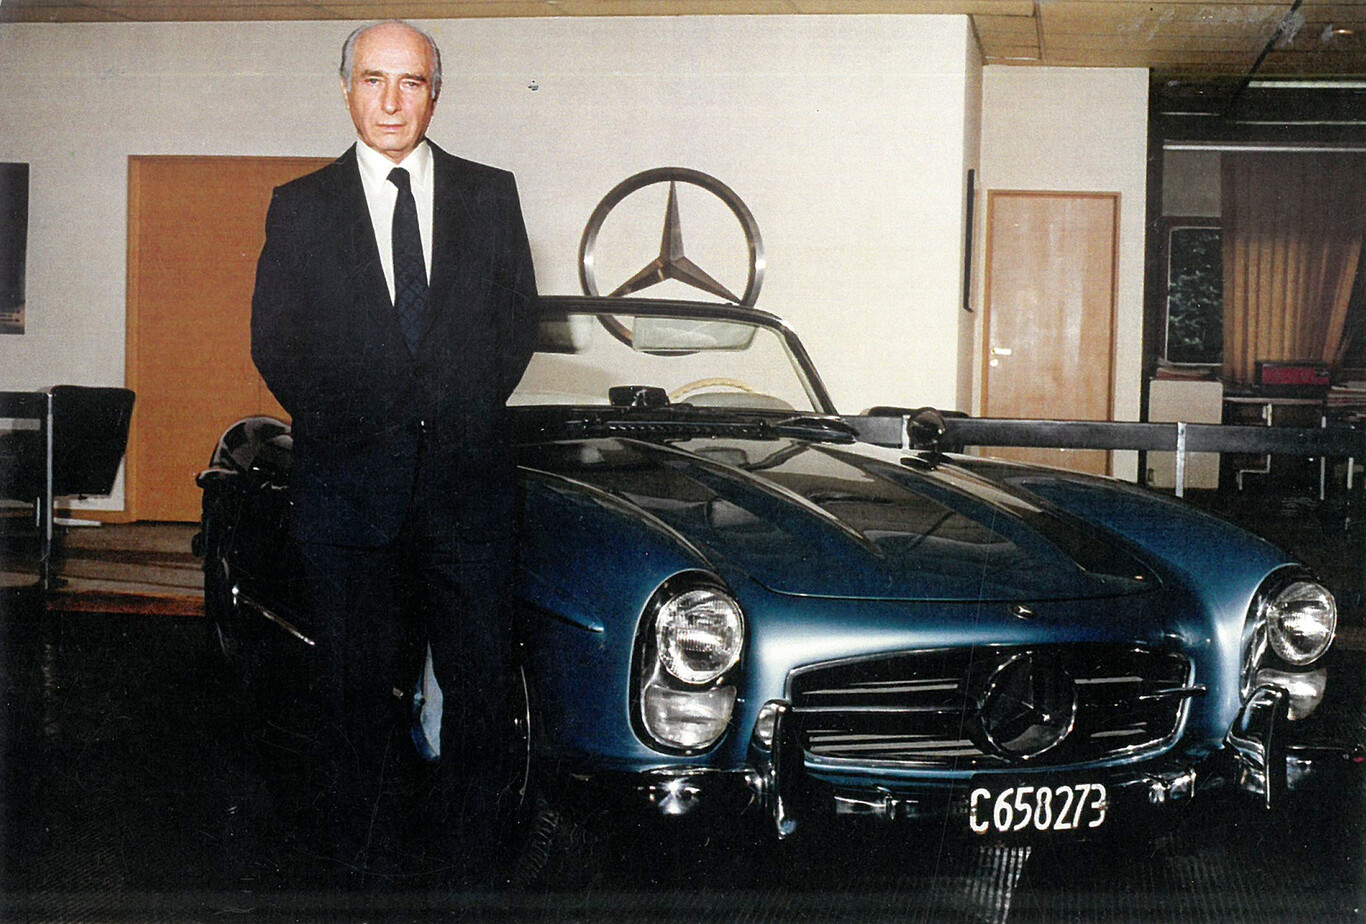 300slRloadster_fangio Se vende: Mercedes-Benz 300 SL Roadster de Fangio - Semanal Clásico - Revista online de coches clásicos, de colección y sport